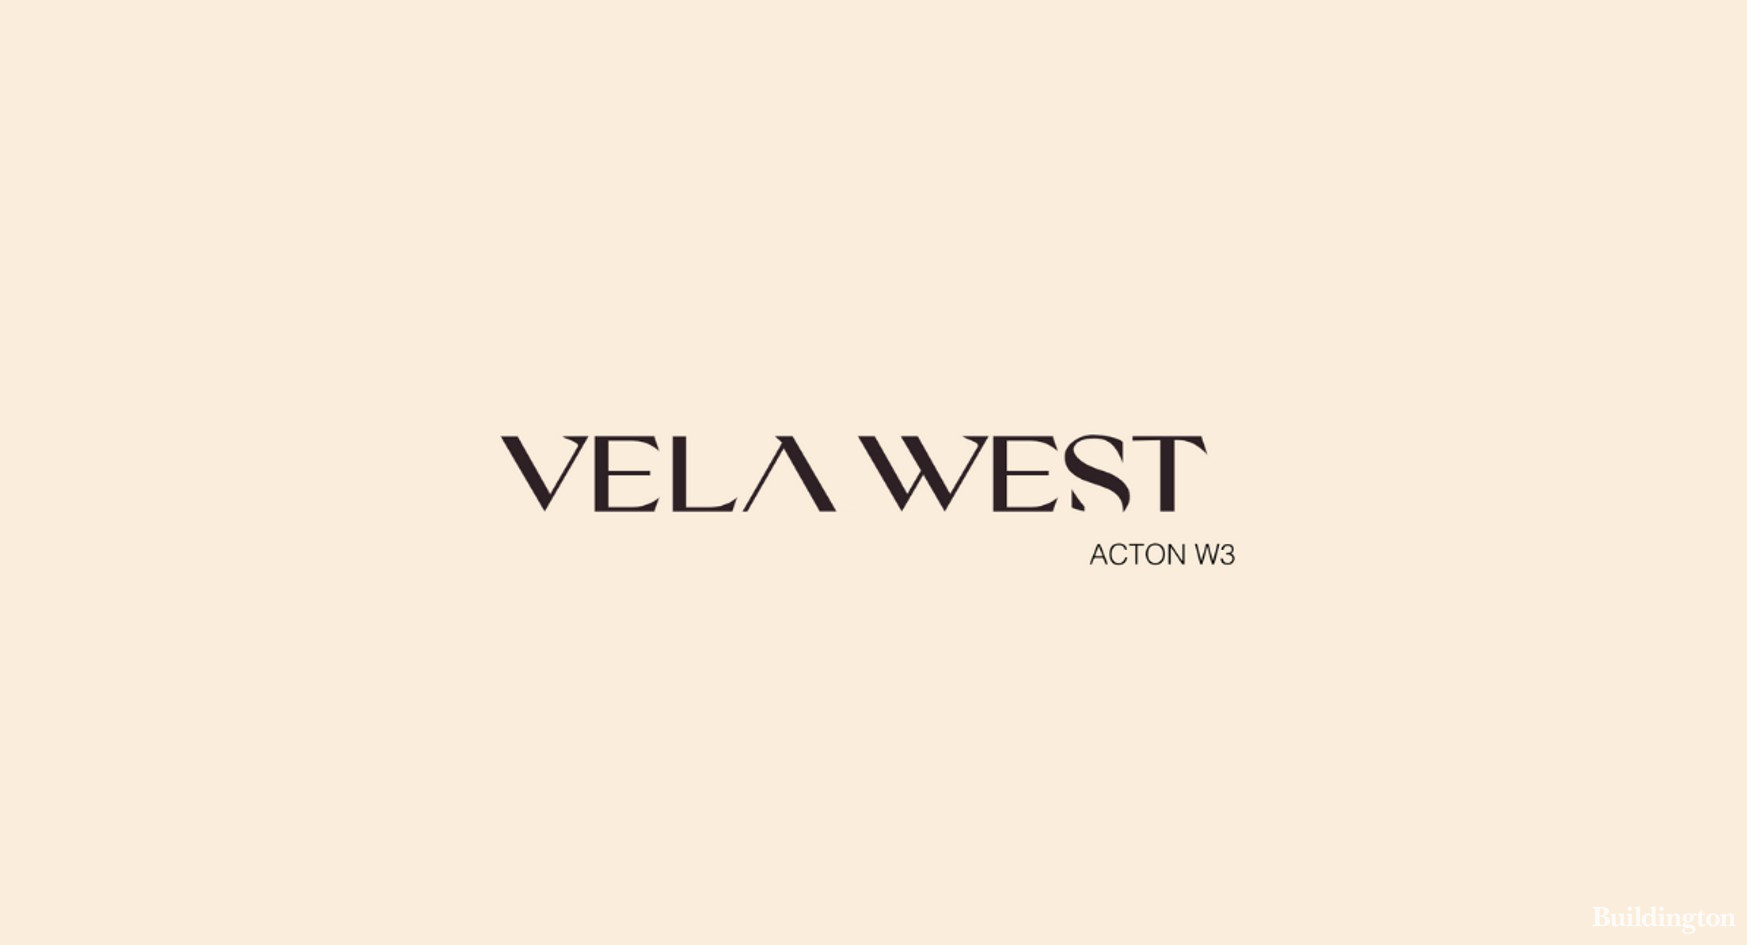 Vela West development logo cover